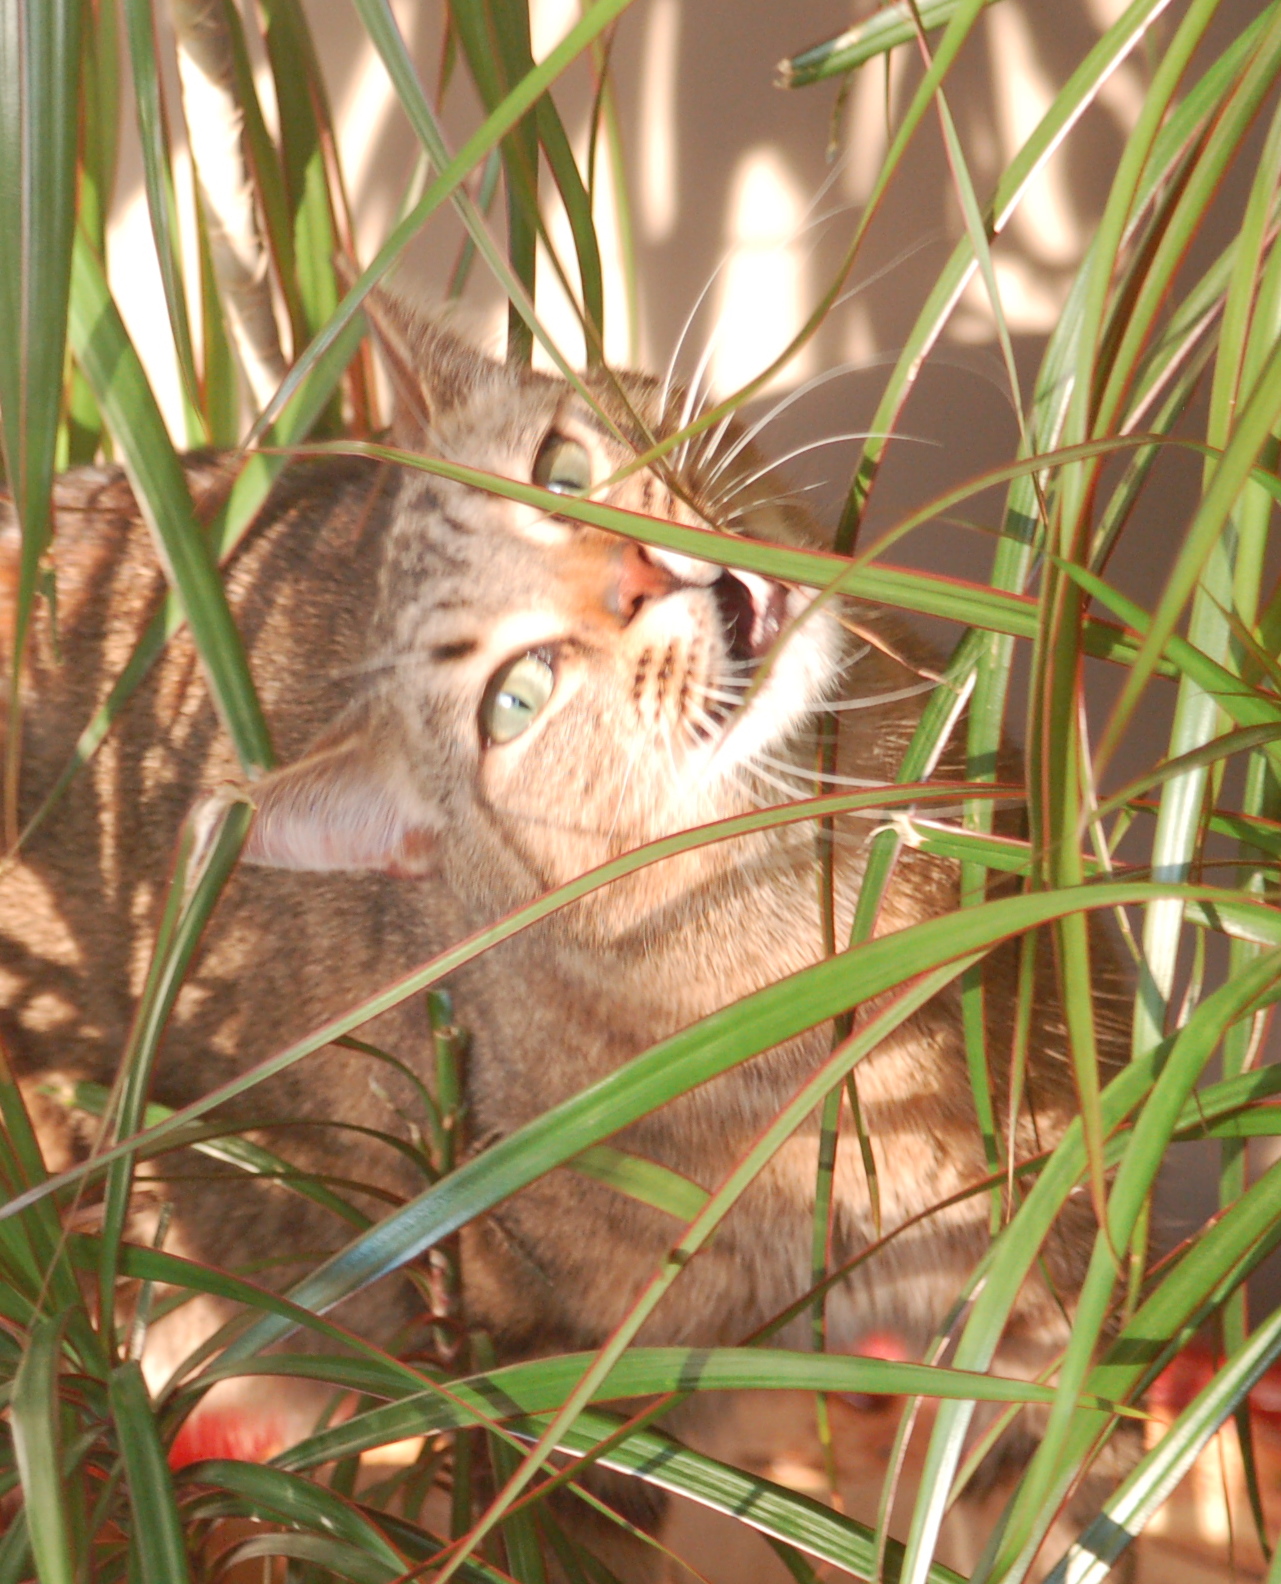 Cat eating a plant leaf